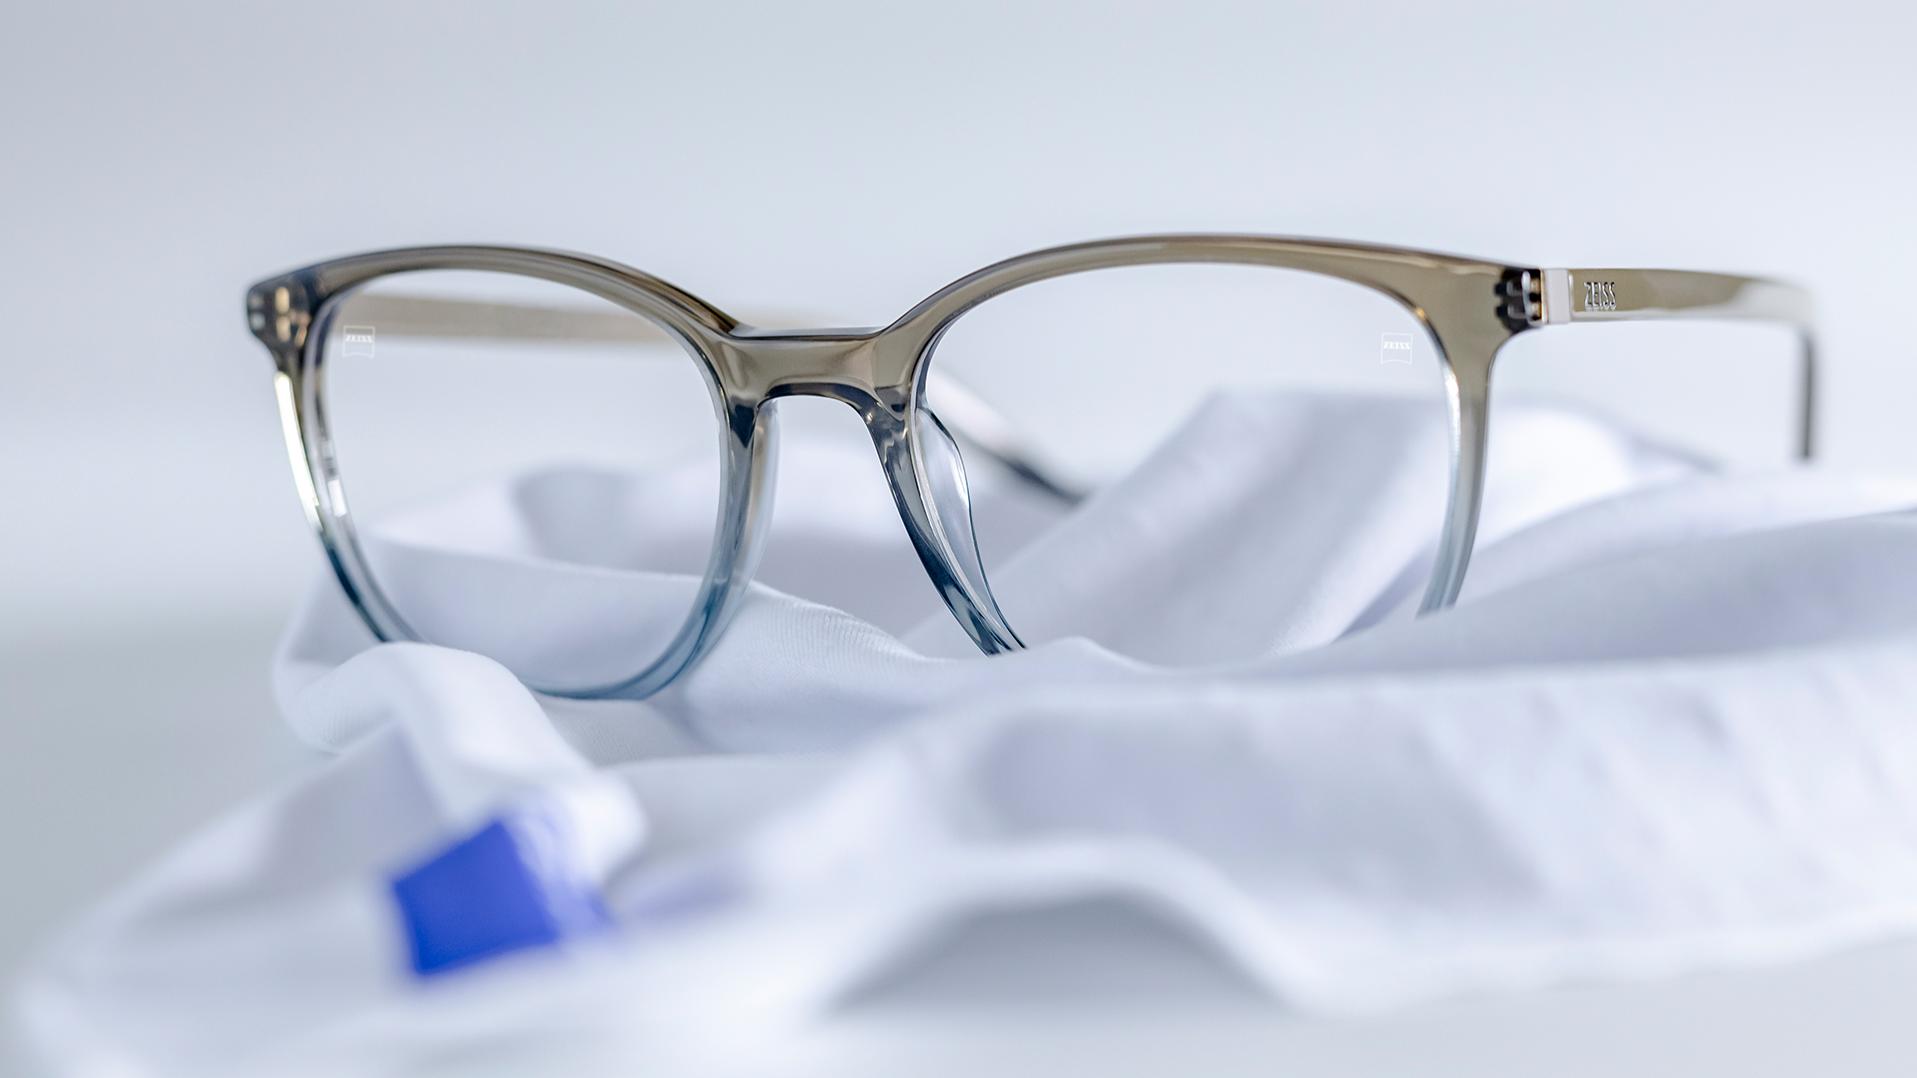 한 벌의 안경이 흰색 극세사 천에 놓여 있다. 회청색 프레임에 자이스 렌즈가 장착되고 렌즈에는 듀라비전® 코팅이 적용되어 있다.